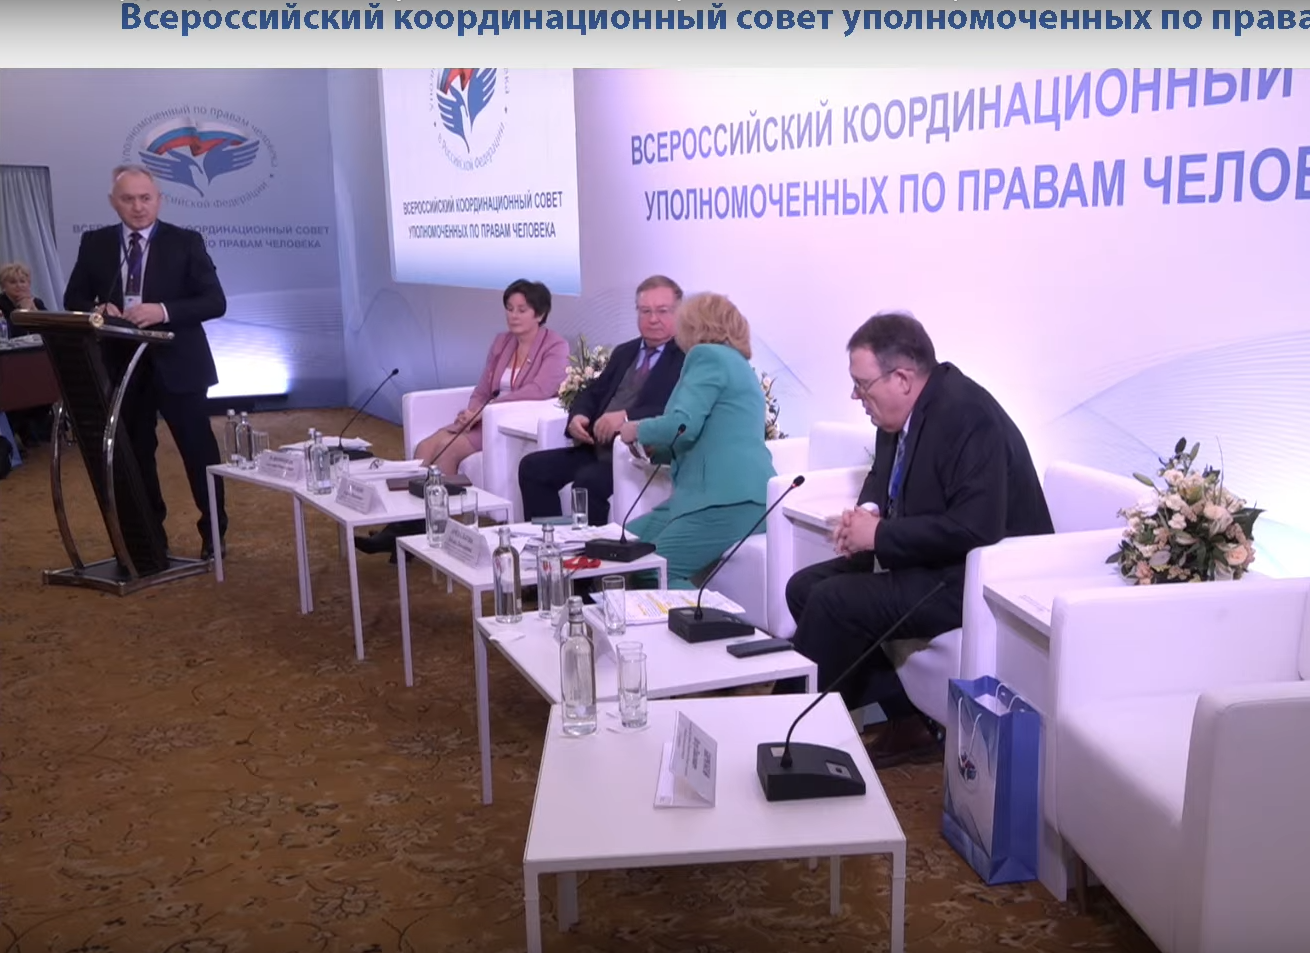 Брянский омбудсмен на Всероссийском координационном совете рассказал о решении жилищных проблем в регионе